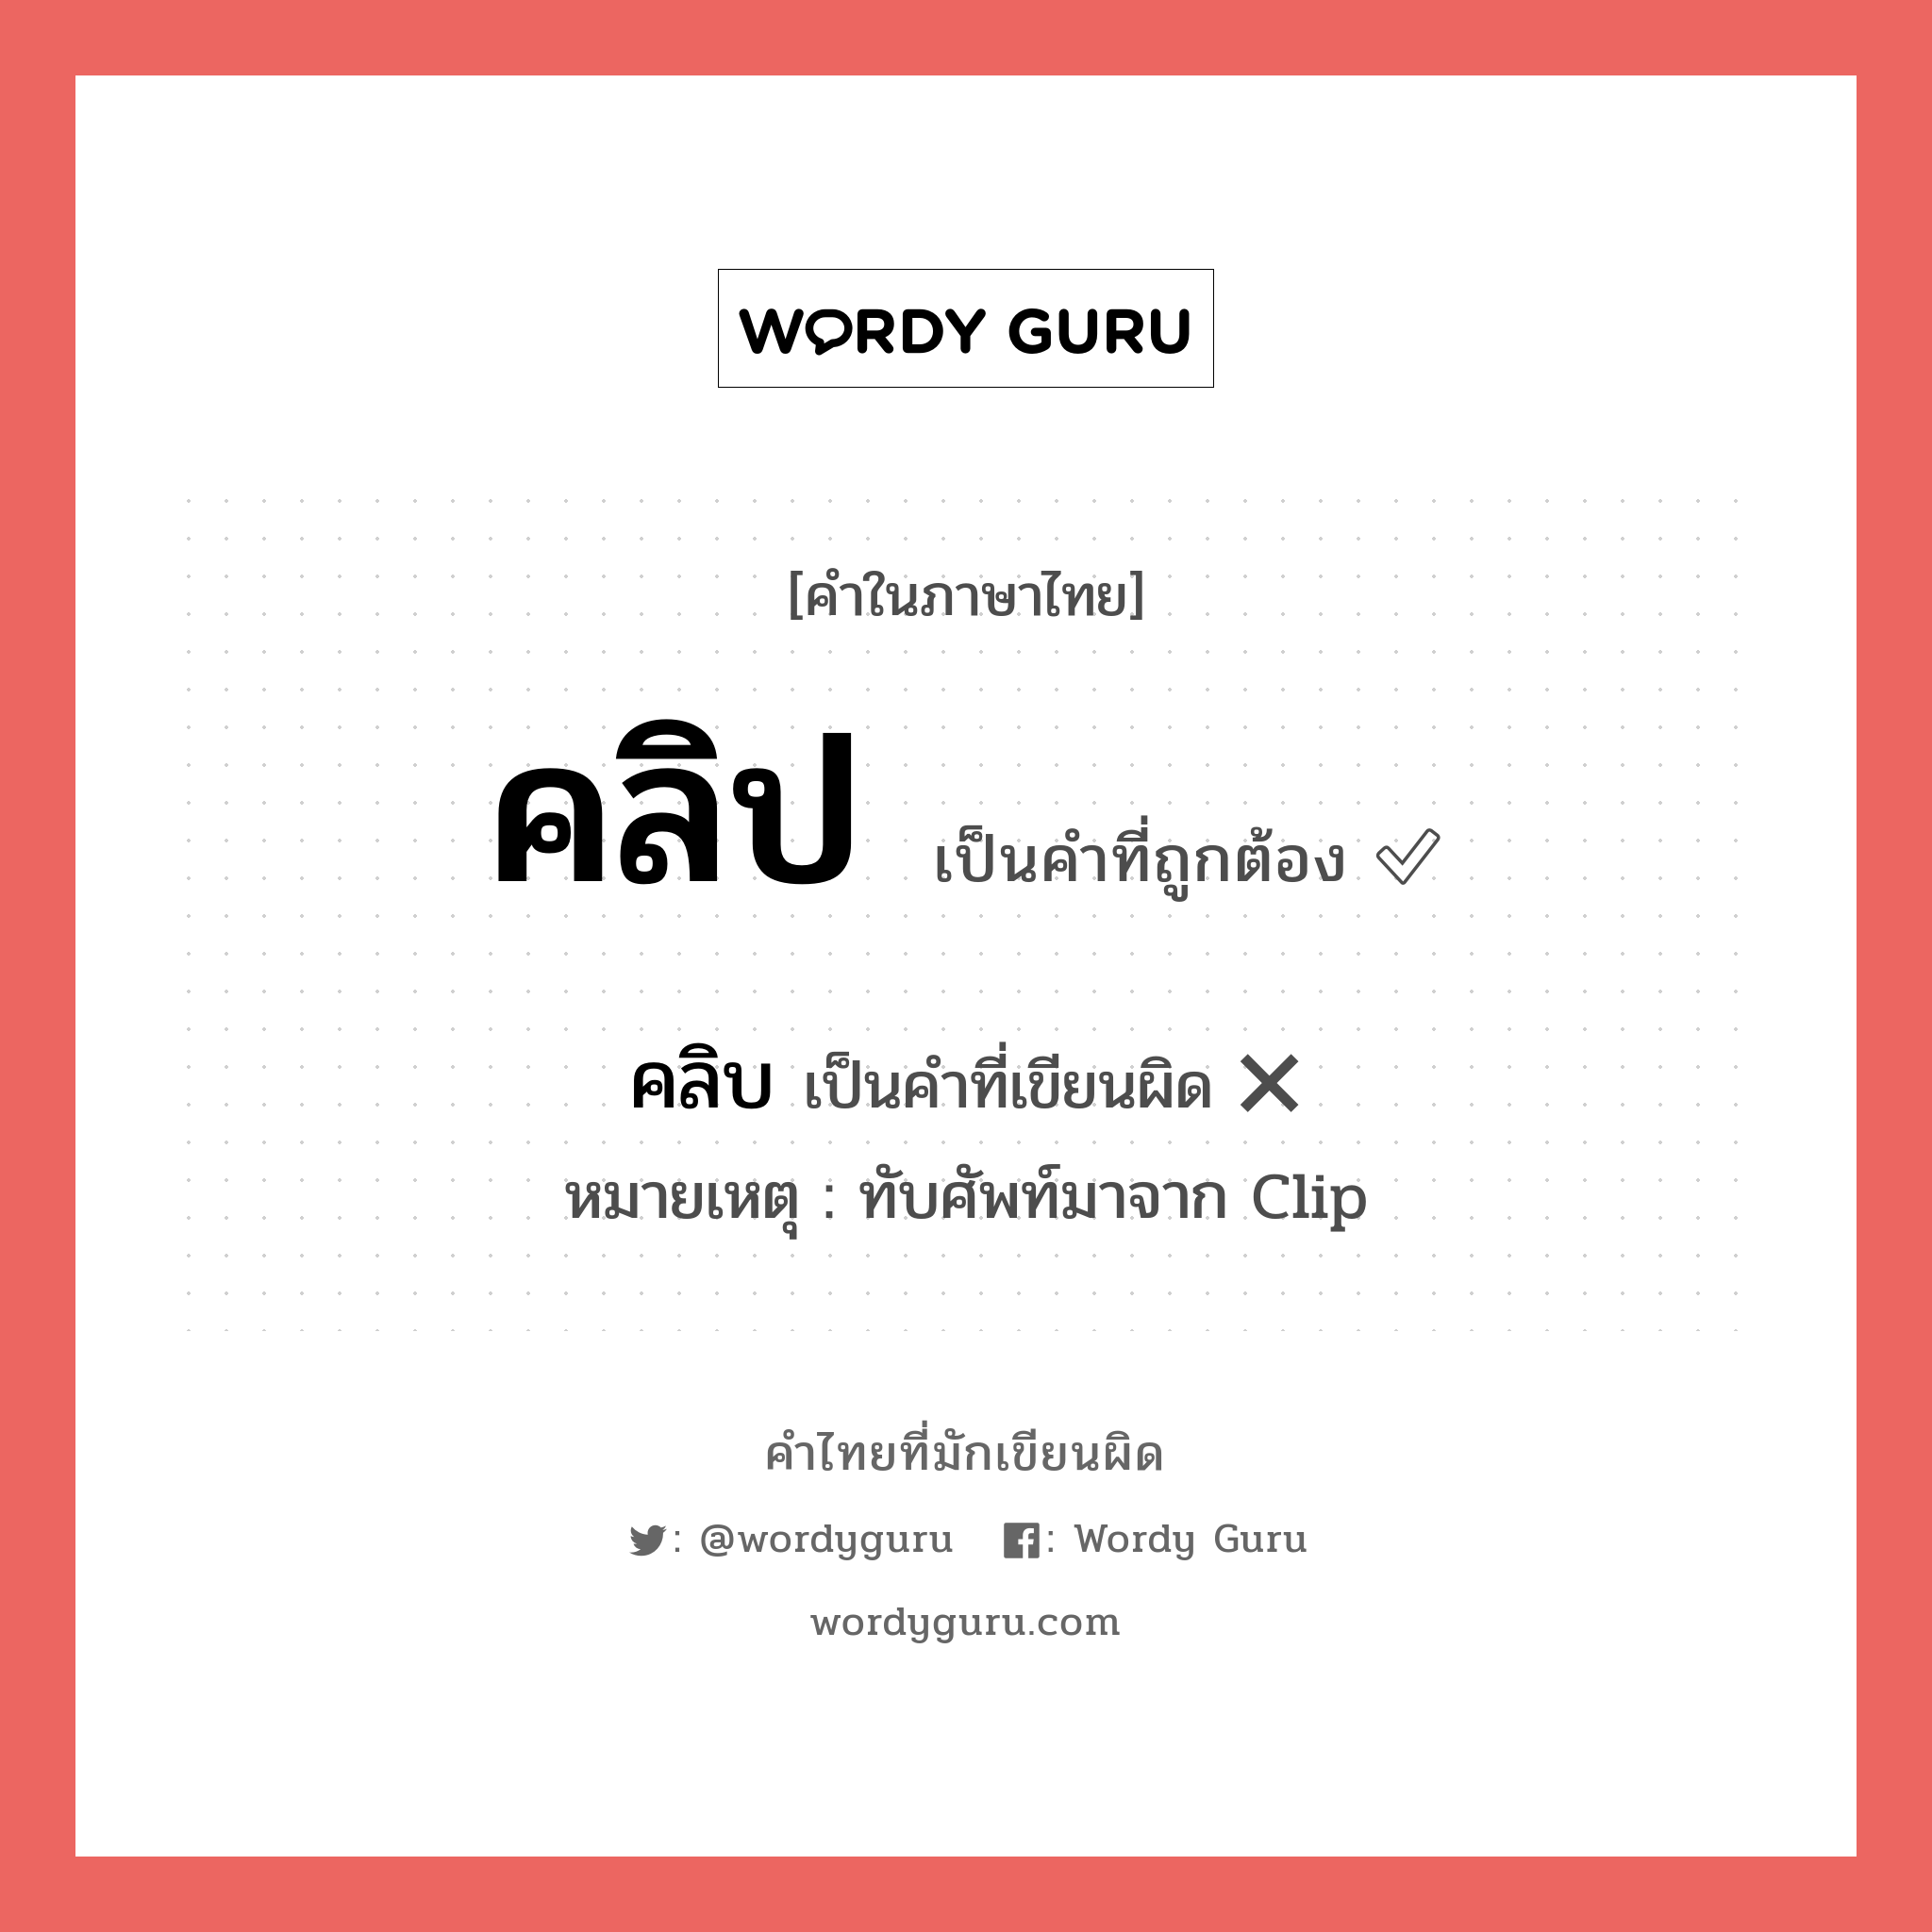 คลิป หรือ คริป คำไหนเขียนถูก?, คำในภาษาไทยที่มักเขียนผิด คลิป คำที่ผิด ❌ คลิบ หมายเหตุ ทับศัพท์มาจาก Clip หมวด การเรียน หมวด การเรียน